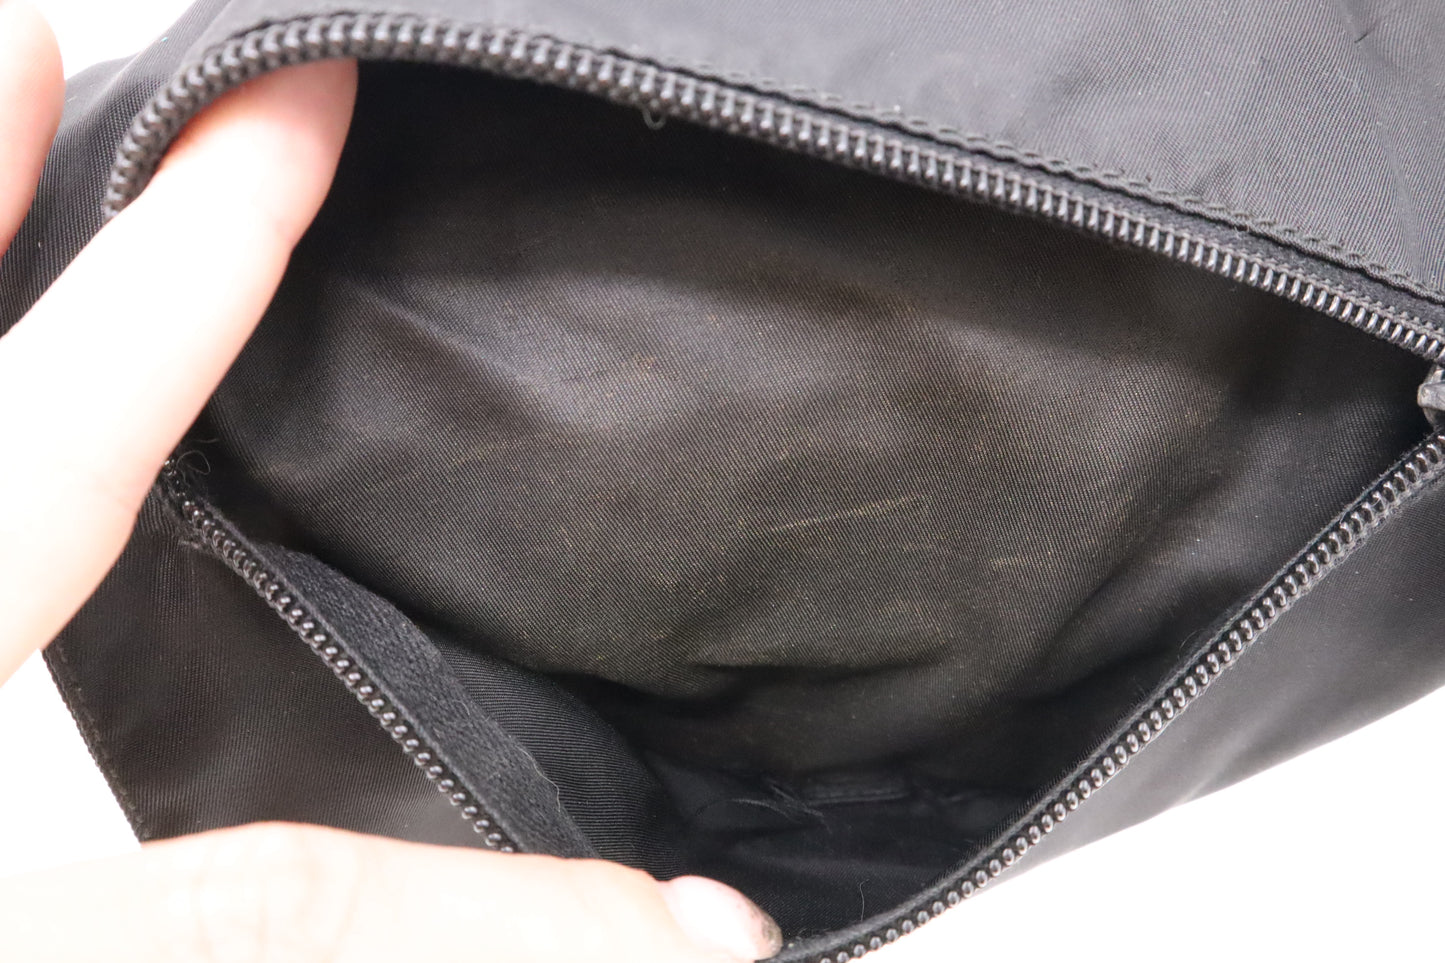 Prada Crossbody Bag in Black Nylon